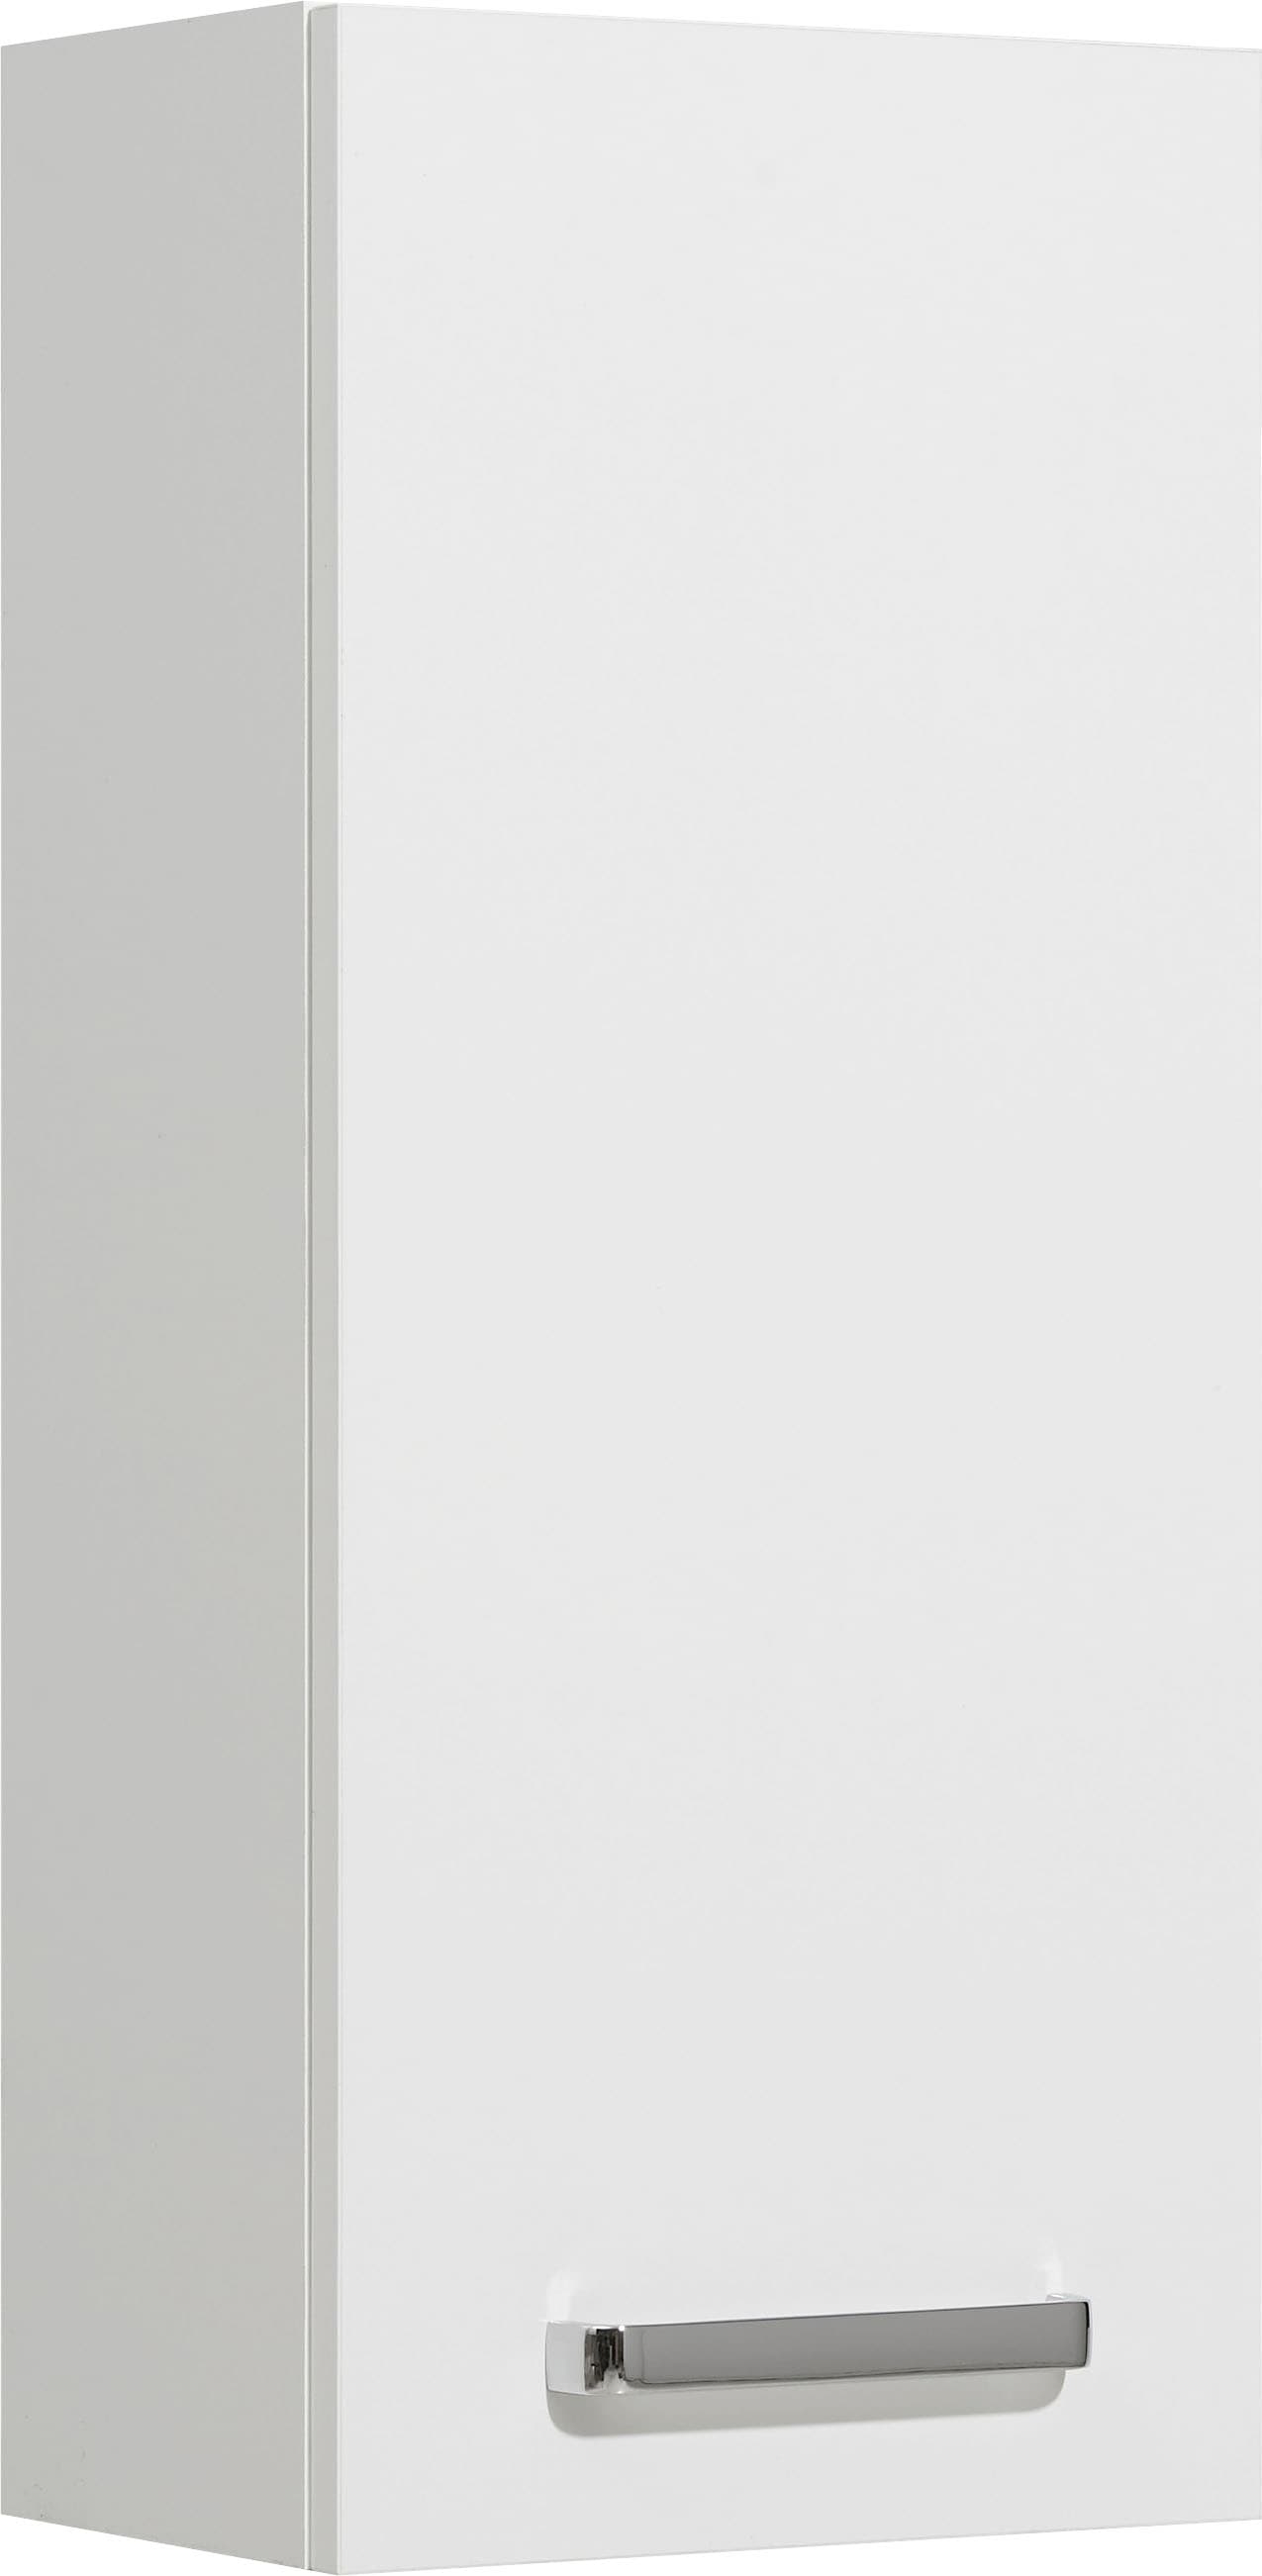 Saphir Hängeschrank »Quickset Wand-Badschrank 25 cm breit mit 1 Tür und 2 Einlegeböden«, Badezimmer-Hängeschrank inkl. Türdämpfer, Griffe in Chrom Glanz